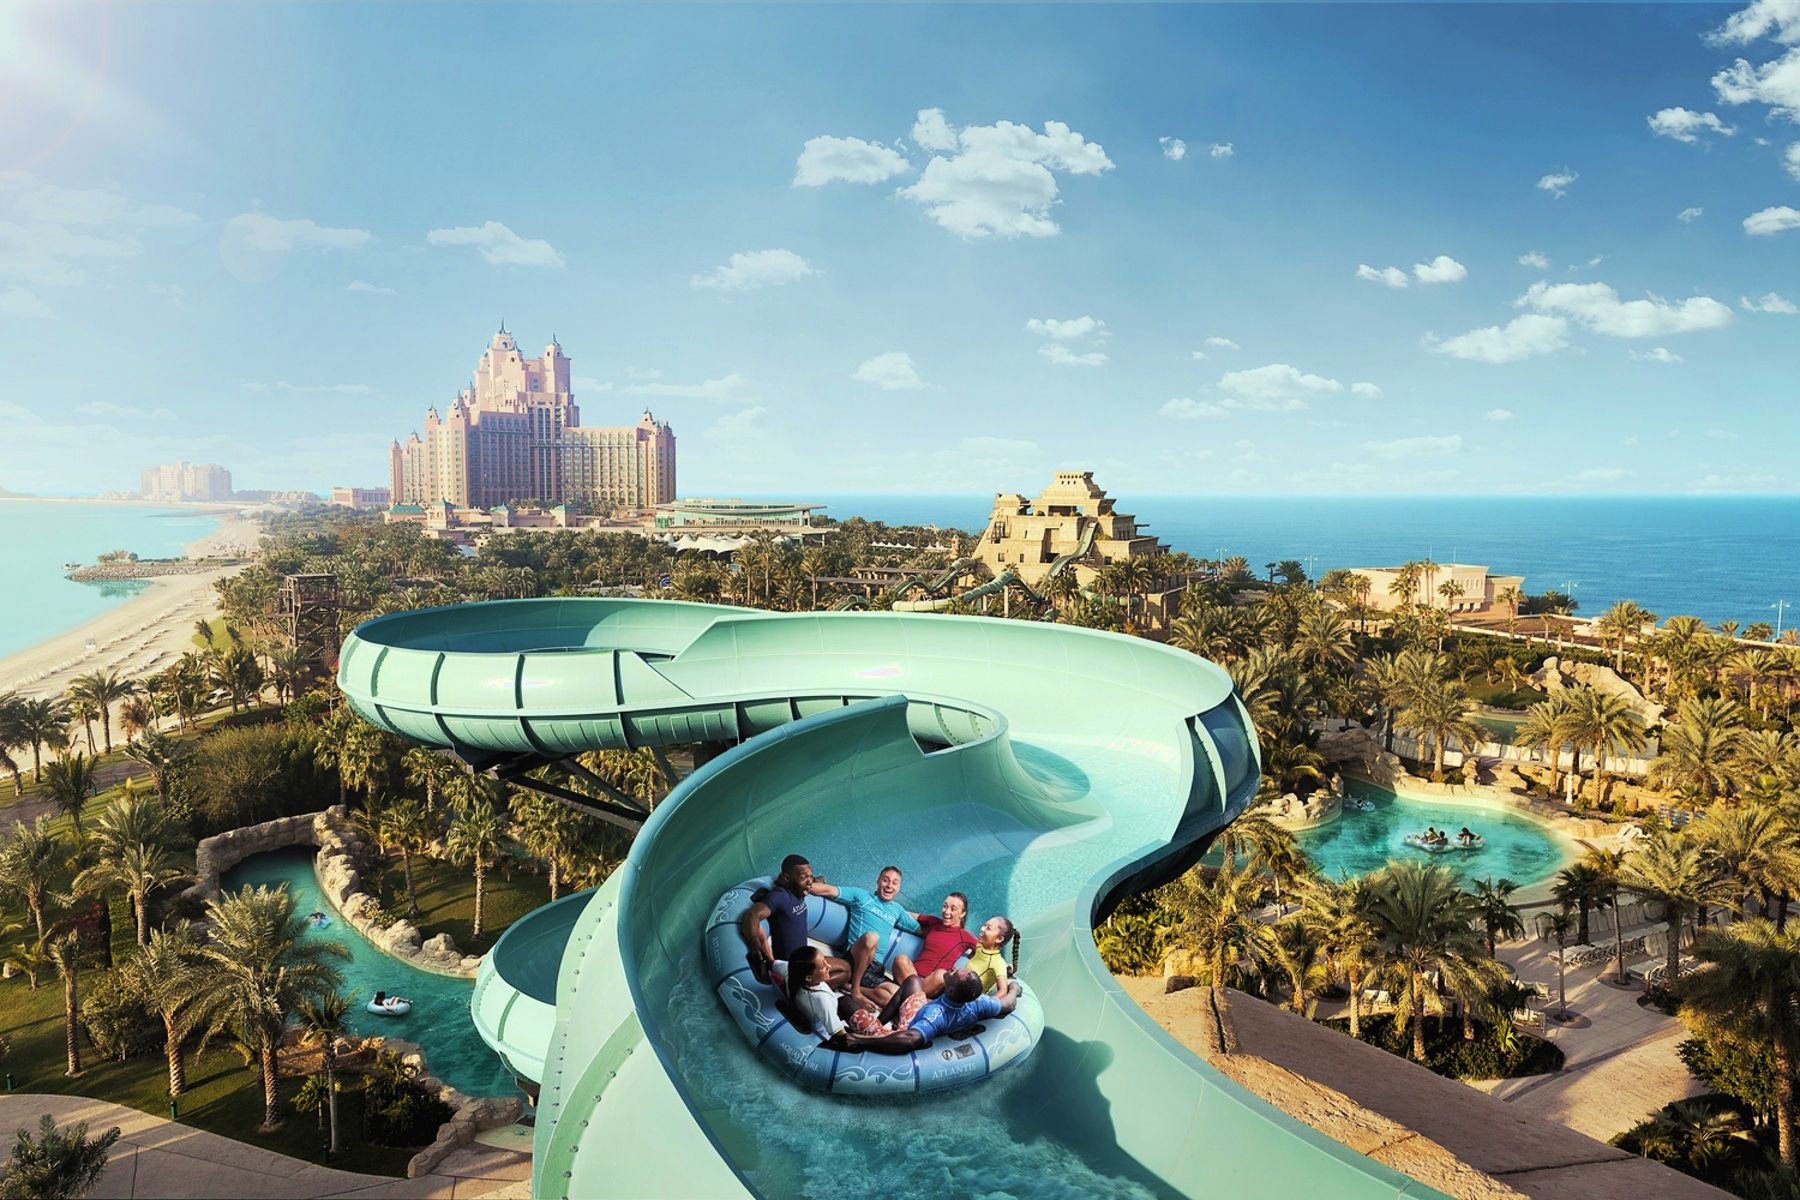 Atlantis аквапарк. Аквапарк Атлантис Дубай. Аквапарк Aquaventure в Дубае. Отель Атлантис Дубай аквапарк. Пальма Джумейра Атлантис аквапарк.